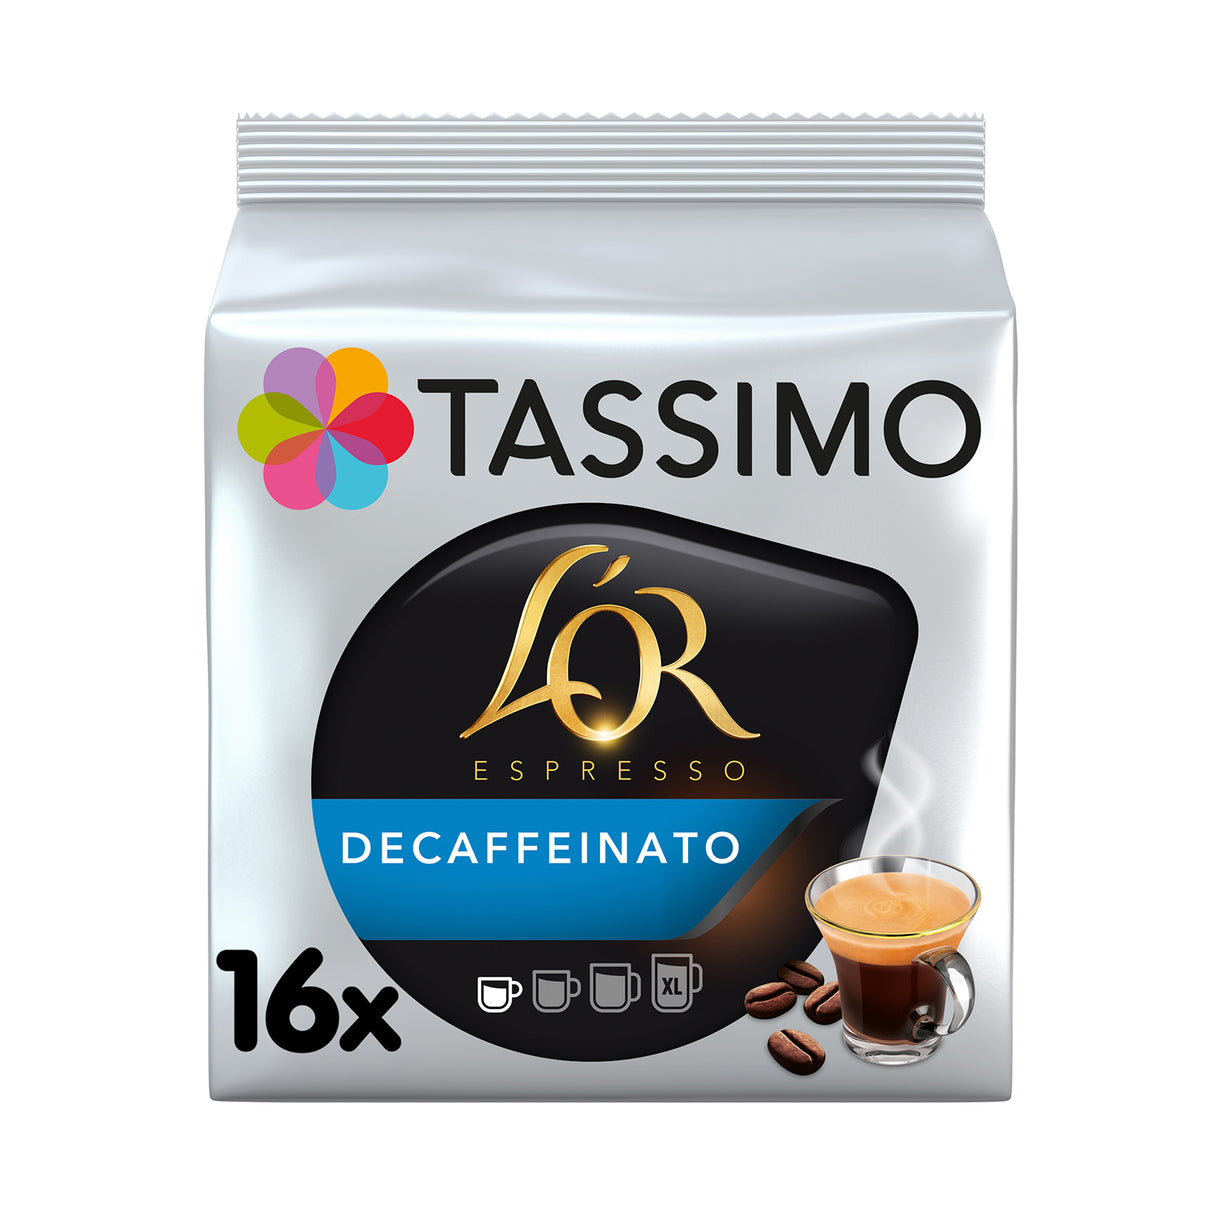 Tassimo L'OR Espresso Decaffeinato Pack